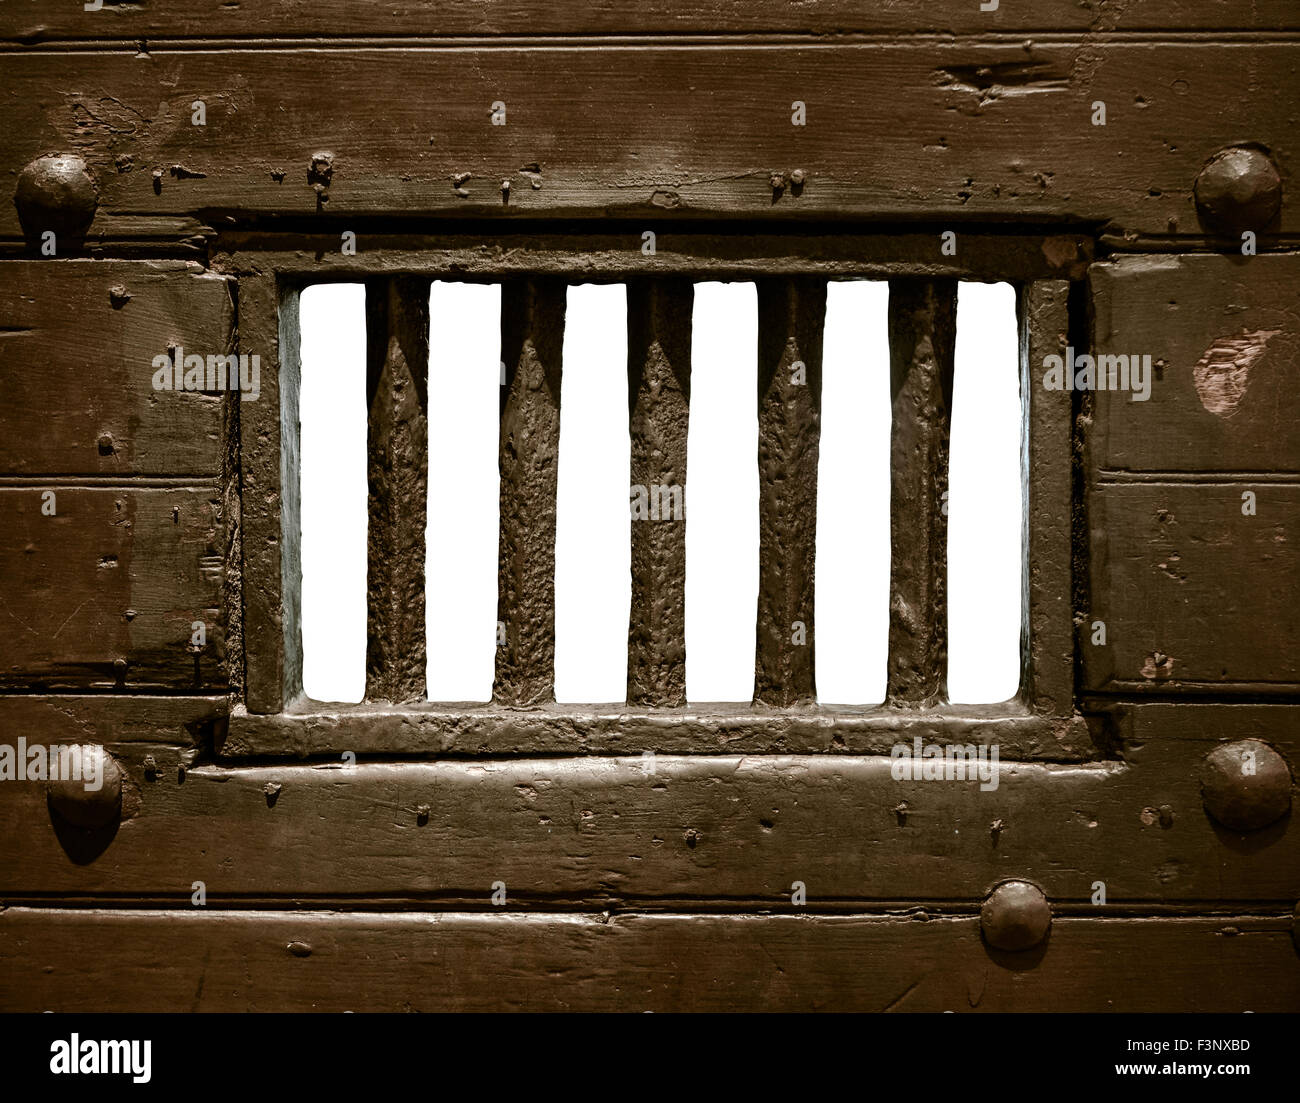 Detalle de las rejas de una prisión o cárcel antigua puerta de la celda Foto de stock